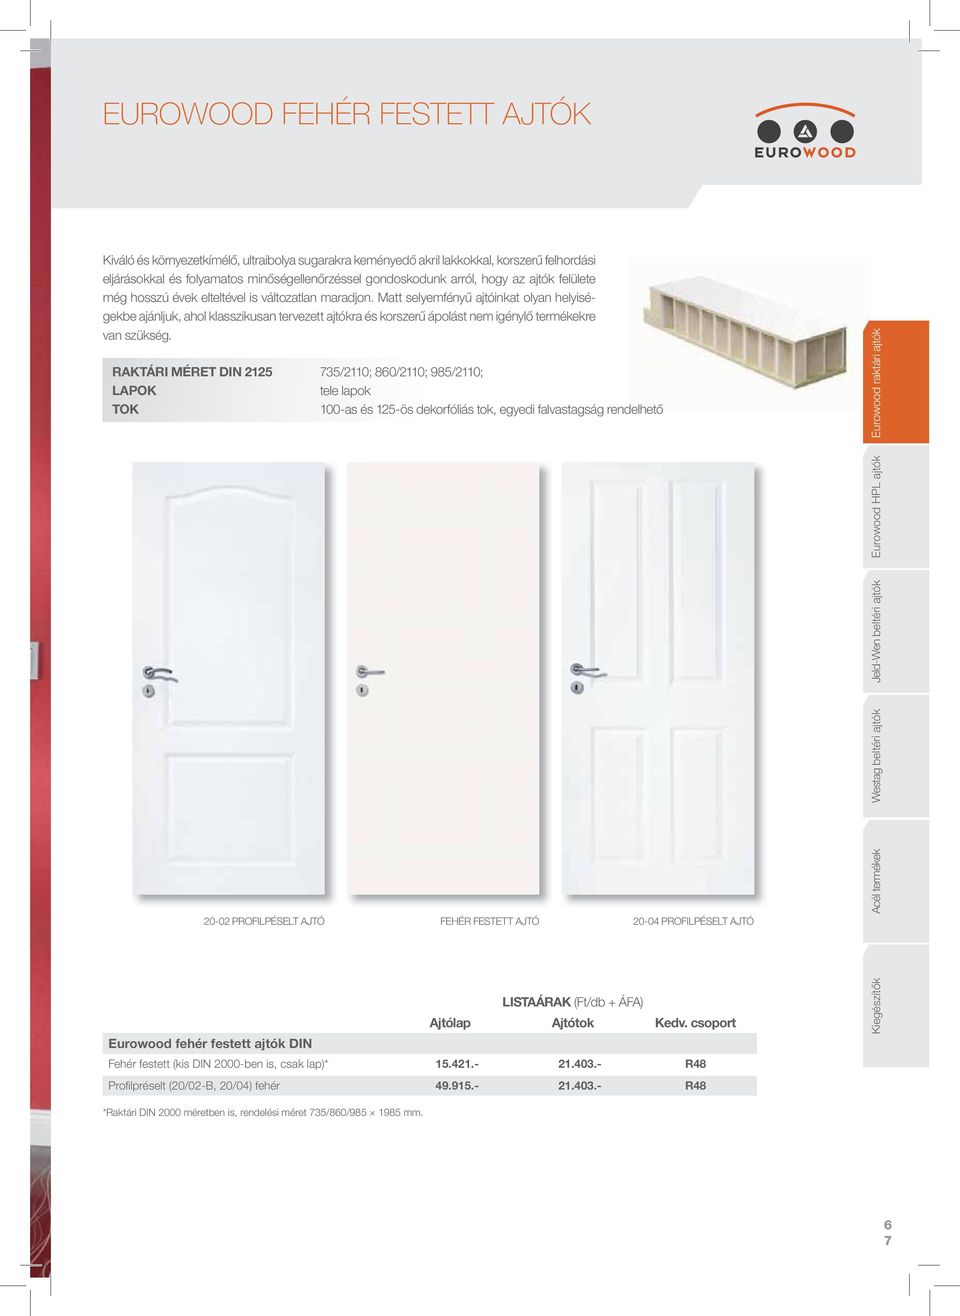 Matt selyemfényű ajtóinkat olyan helyiségekbe ajánljuk, ahol klasszikusan tervezett ajtókra és korszerű ápolást nem igénylő termékekre van szükség.